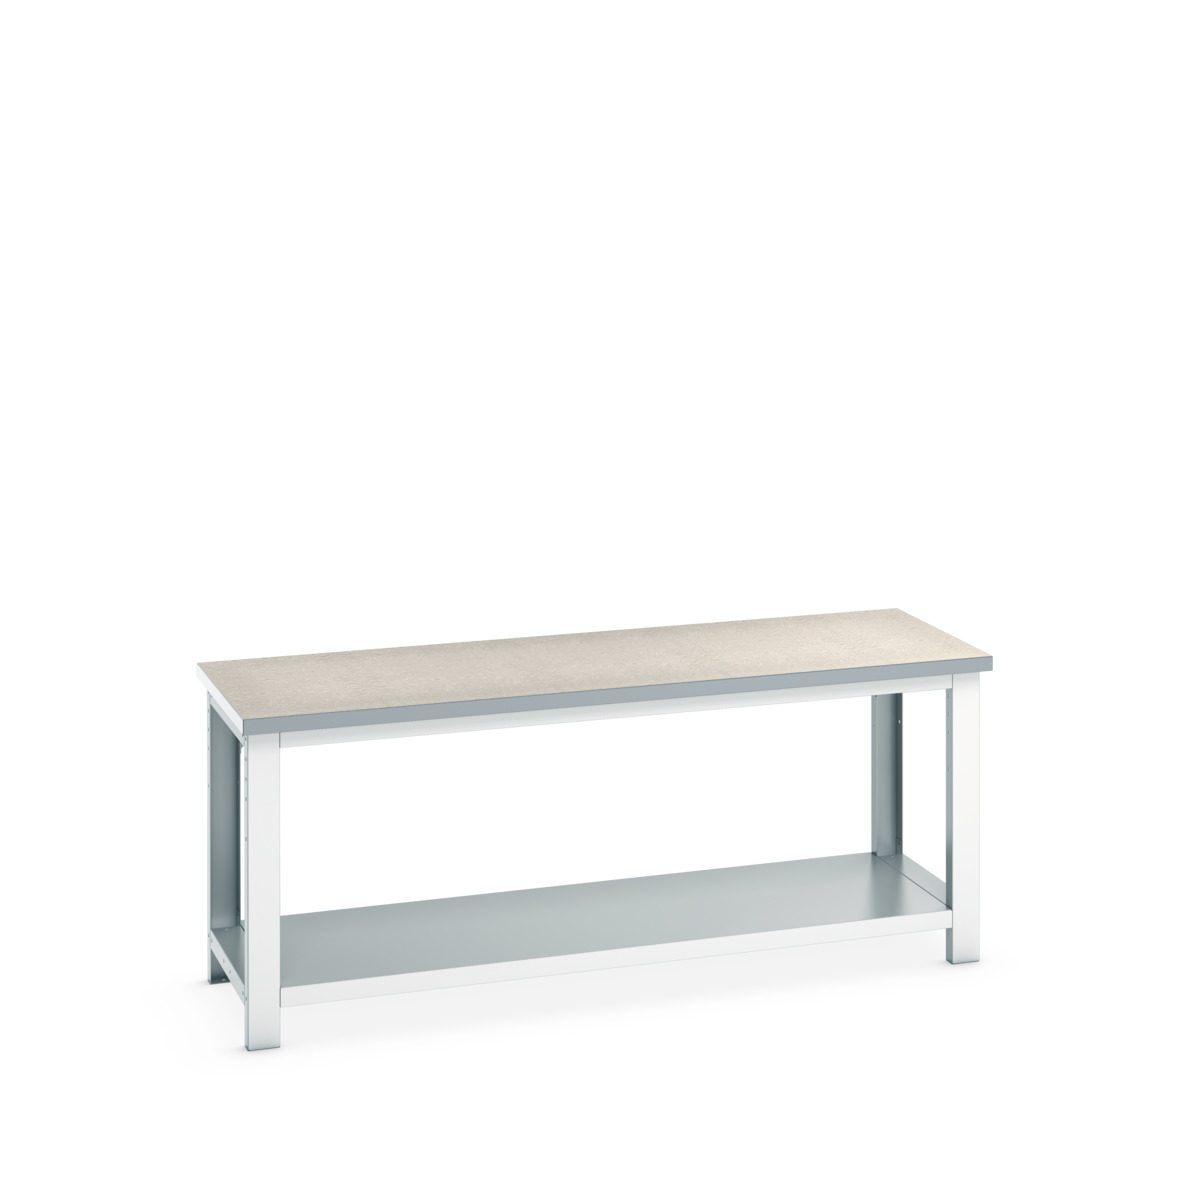 41003506.16V - cubio framework bench (lino)